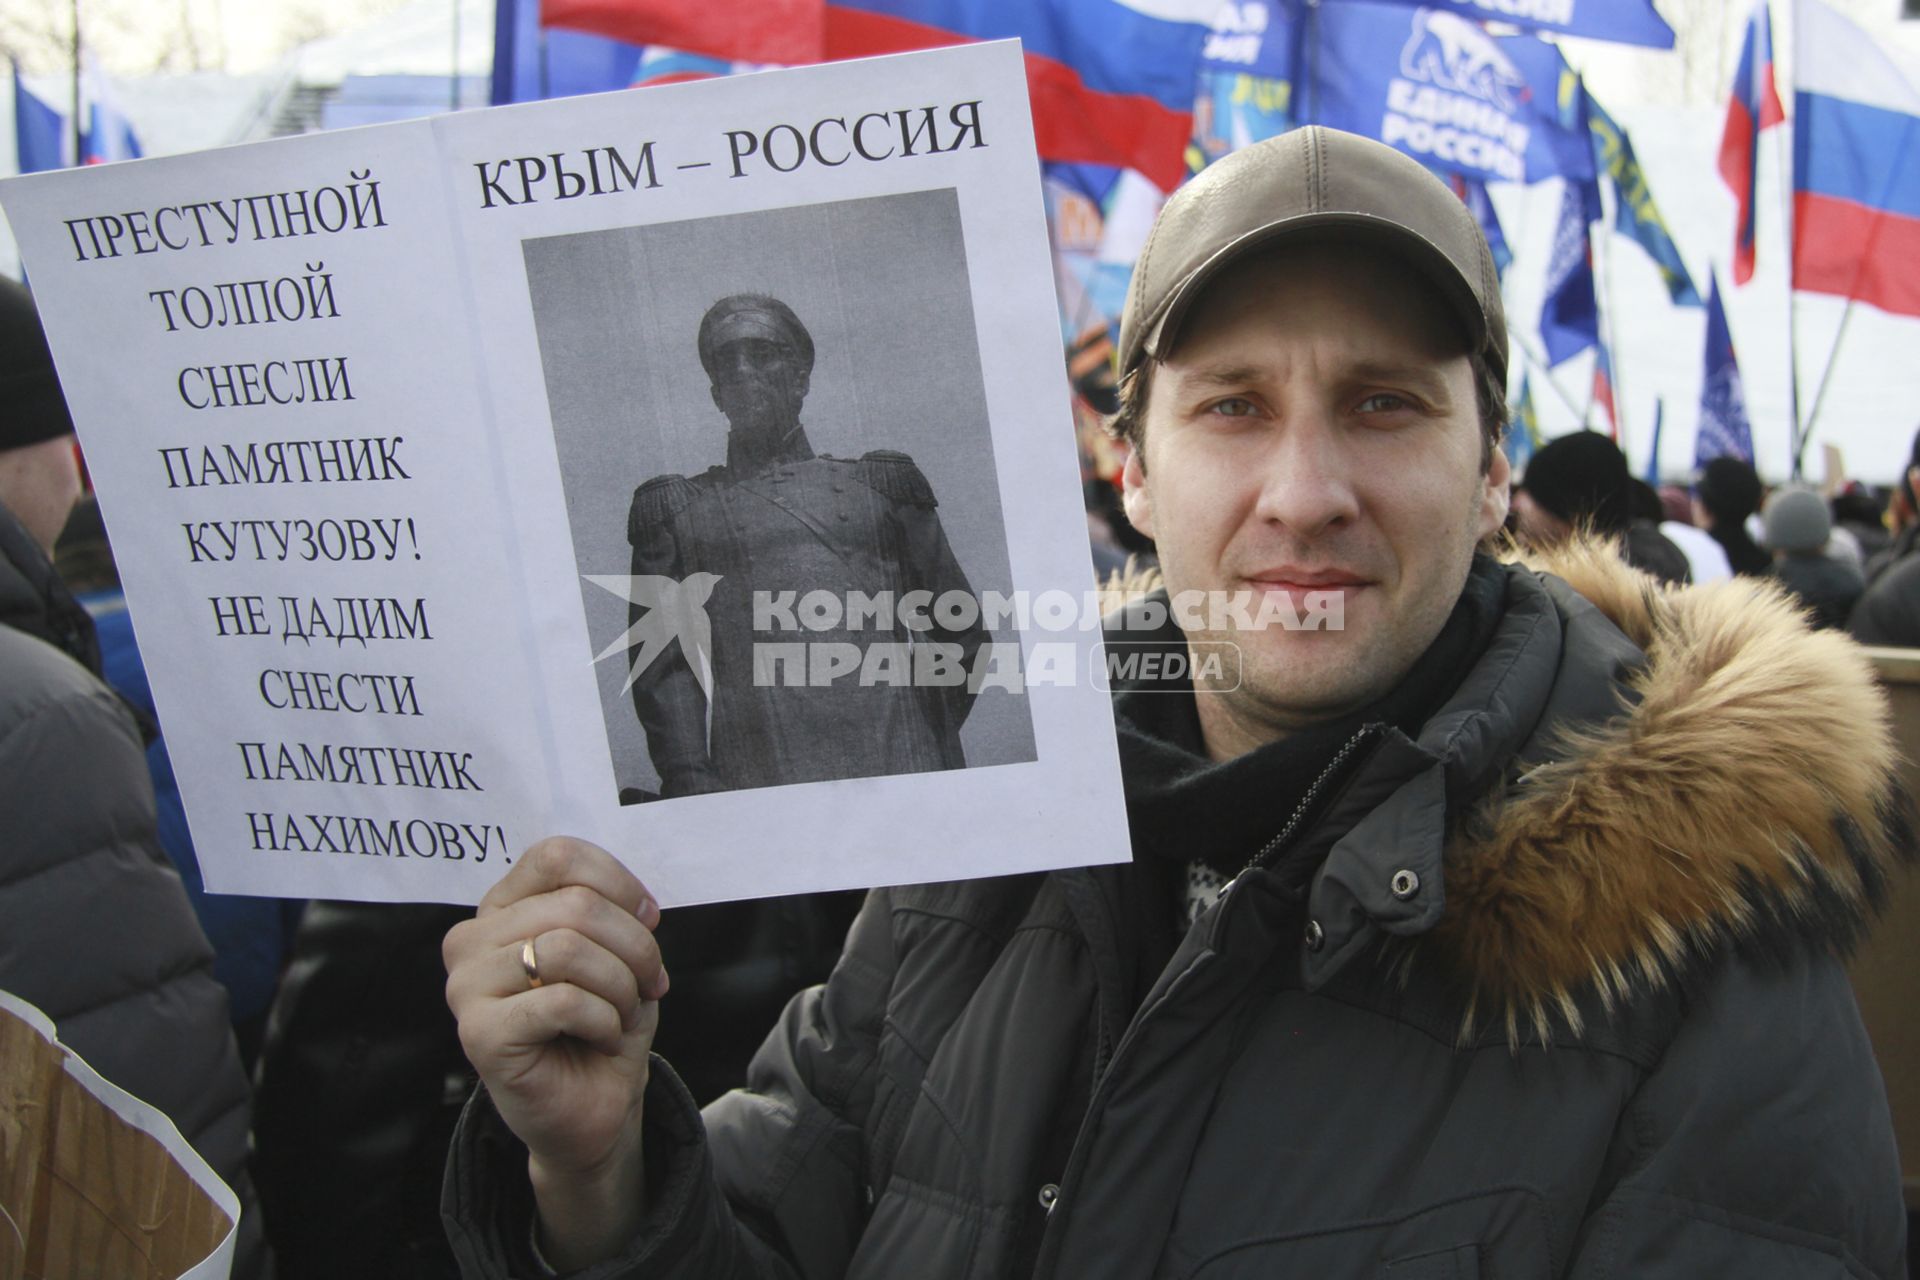 Митинг в поддержку поддержка Крыма в Барнауле. На снимке: митингующий с плакатом.